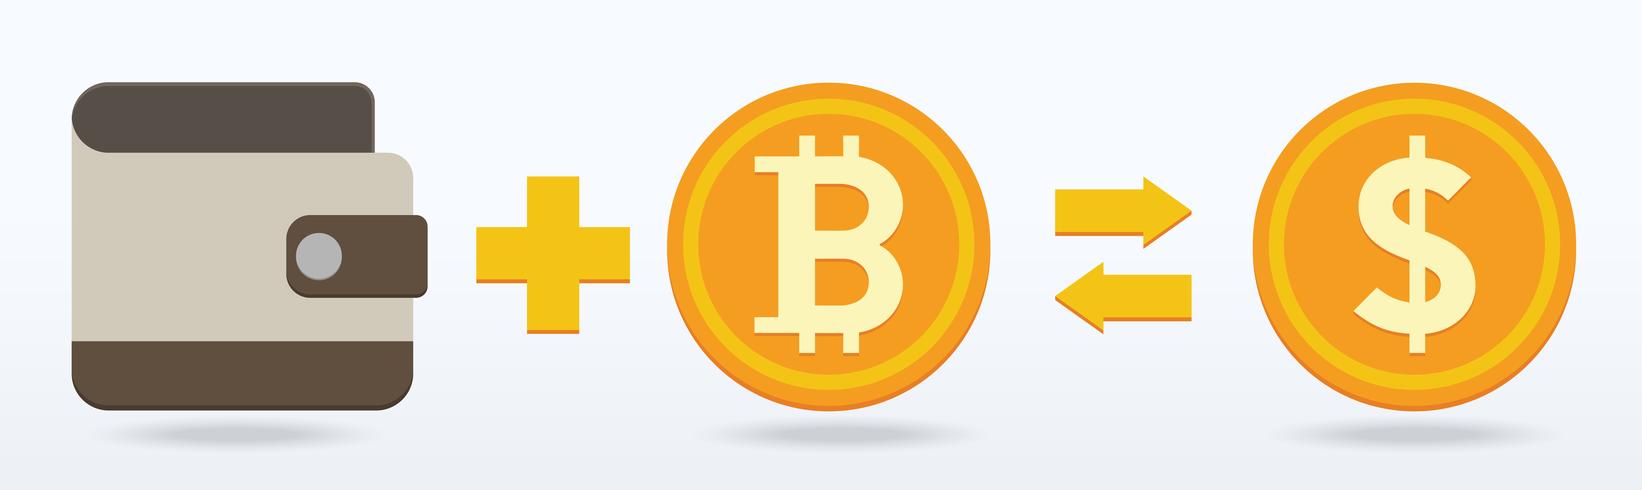 Bitcoin platt design, digitalt eller virtuellt mynt vektor